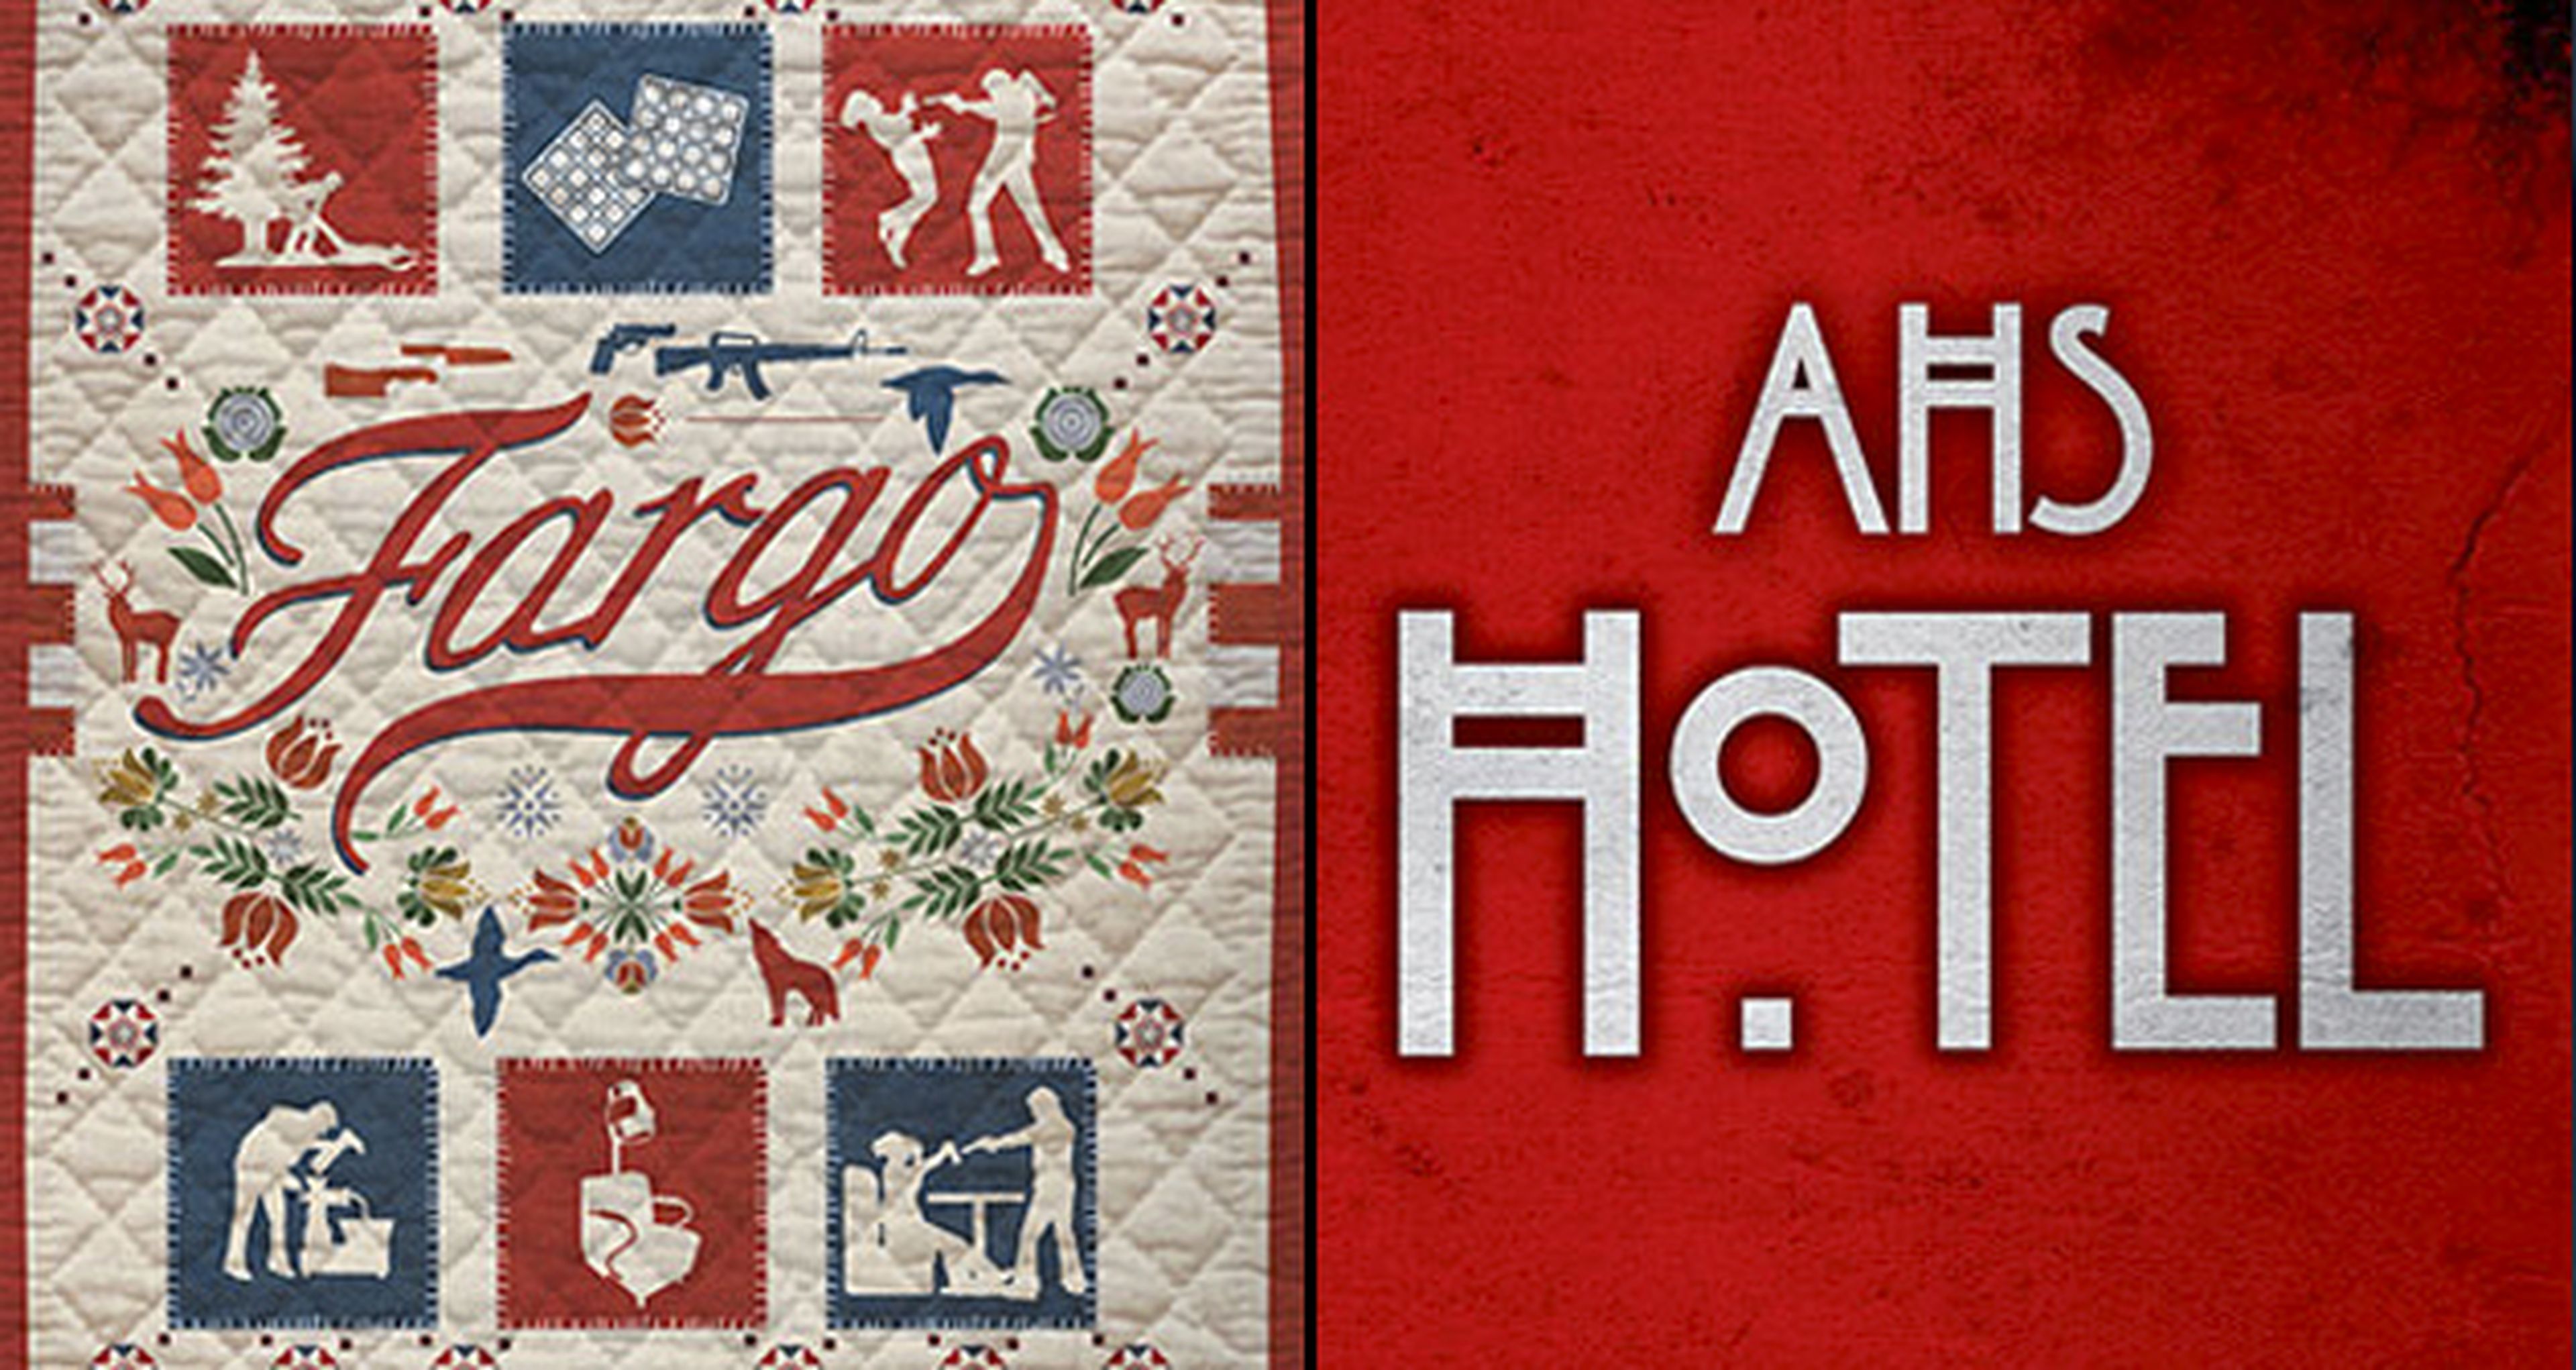 American Horror Story Hotel y Fargo 2: los carteles de la Comic Con